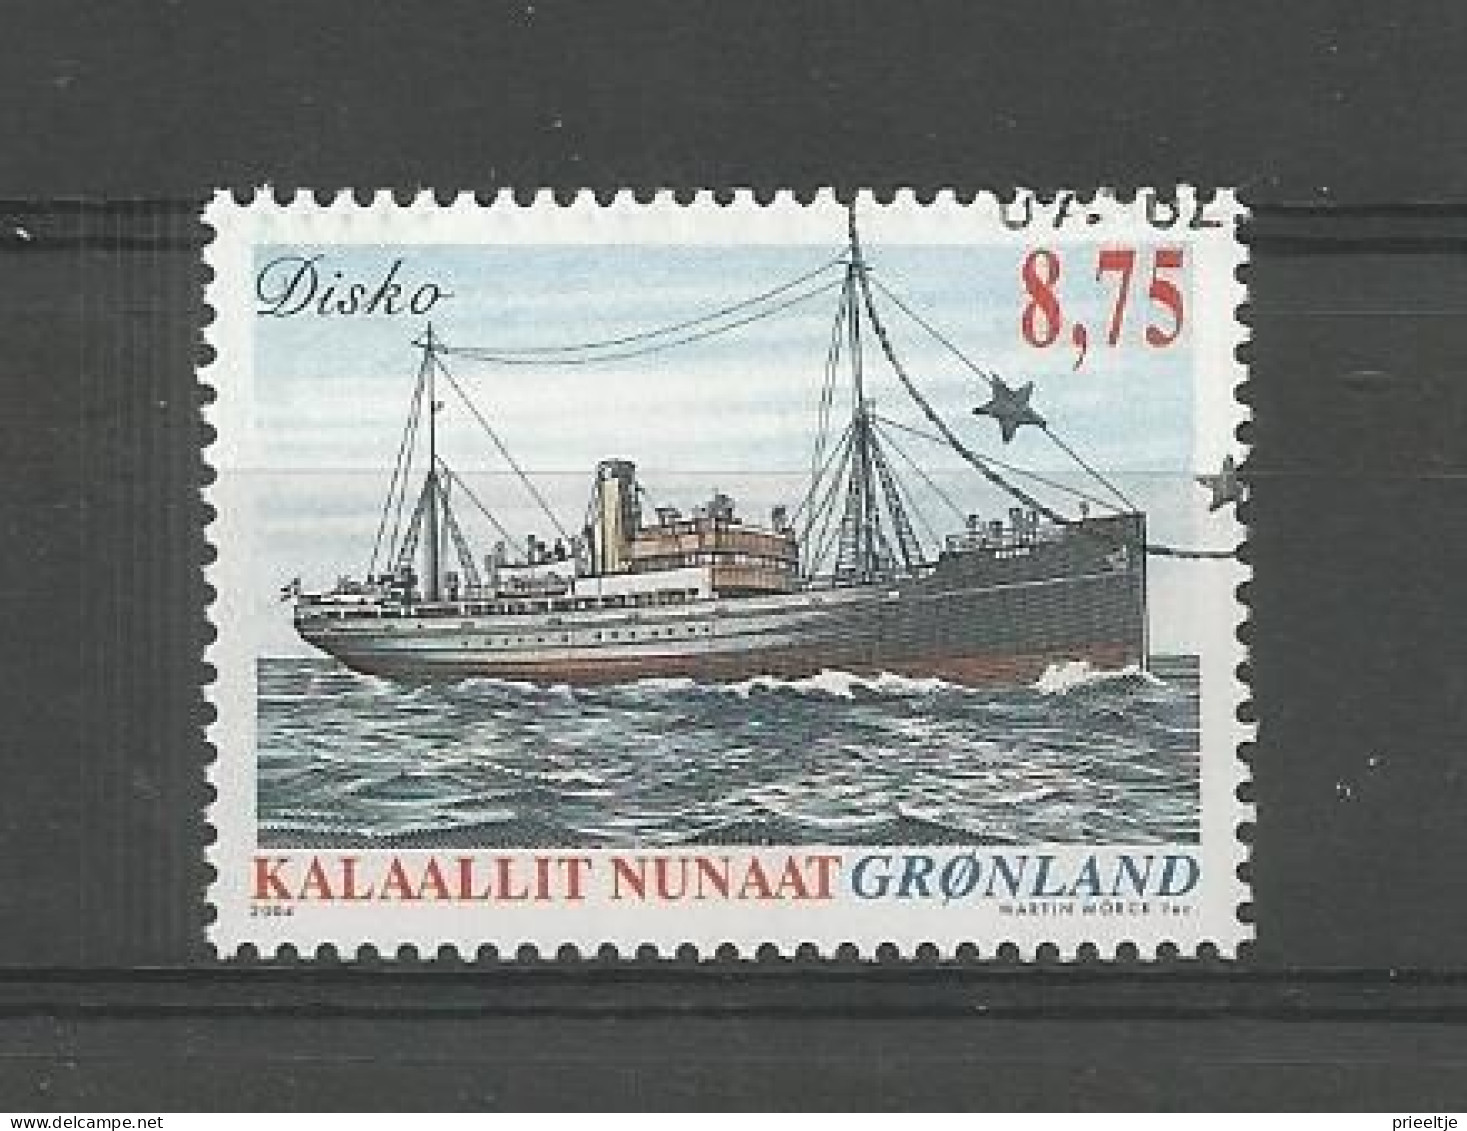 Greenland 2004 Ship Y.T. 403 (0) - Gebraucht